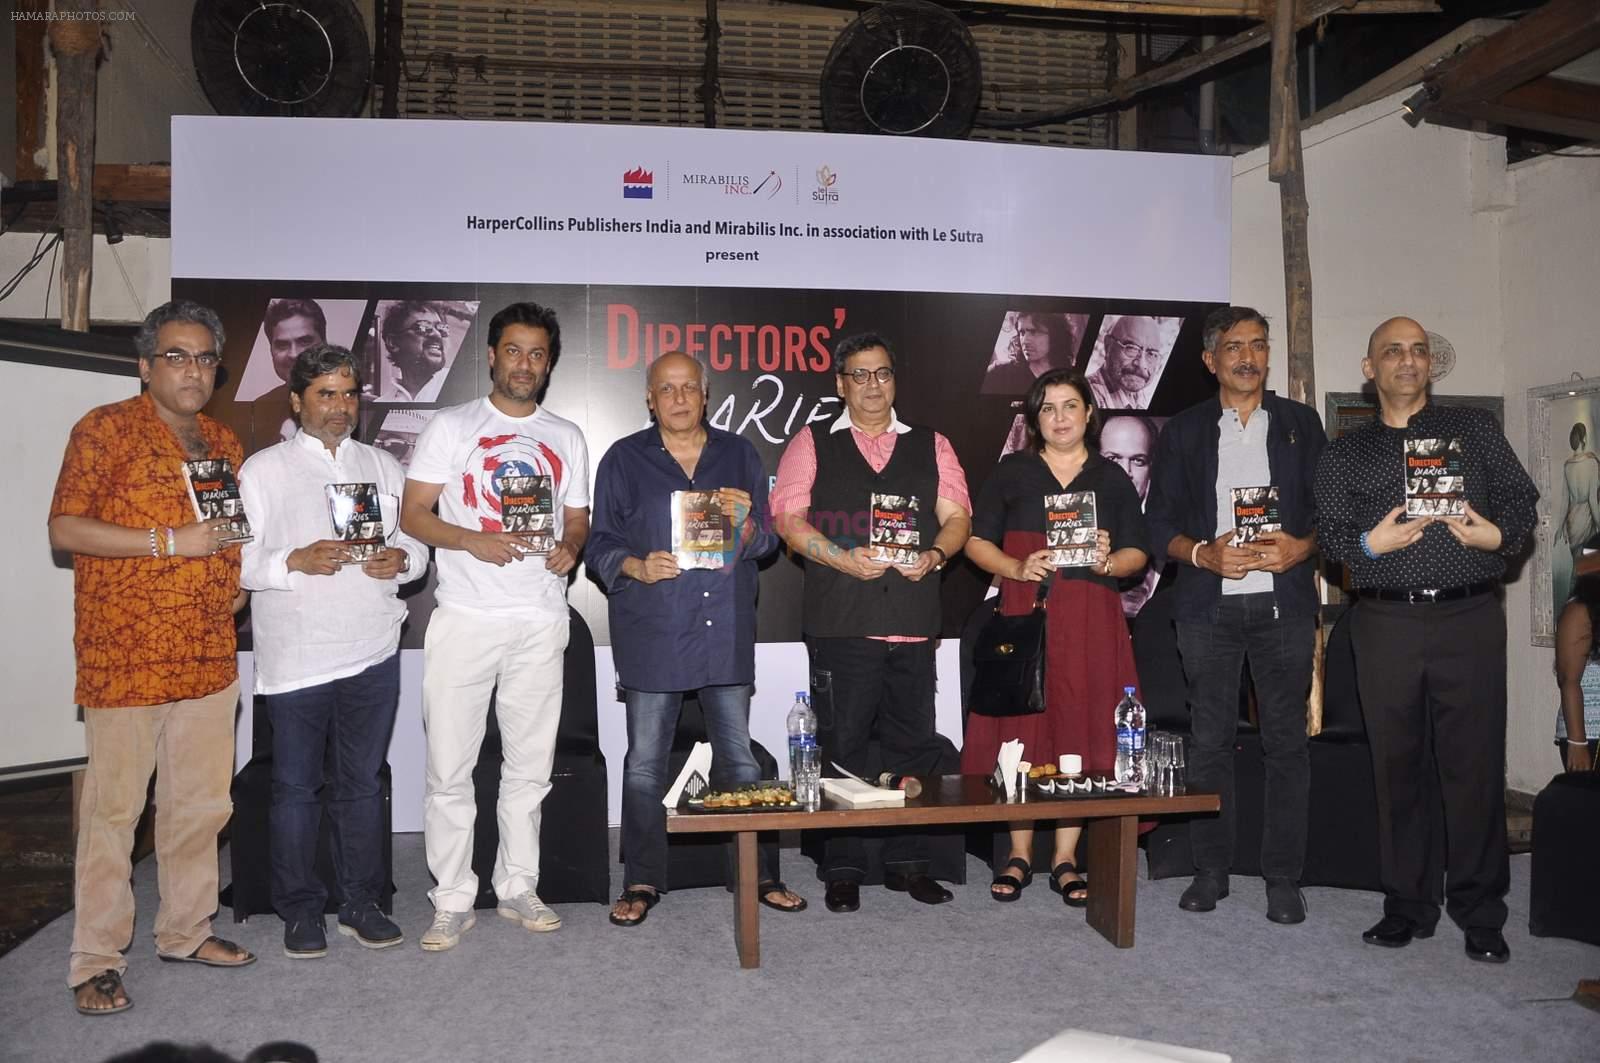 Vishal Bharadwaj, Abhishek Kapoor, Mahesh Bhatt, Farah Khan, Subhash Ghai, Prakash Jha at Director's Diaries book launch  in Mumbai on 9th Aug 2015